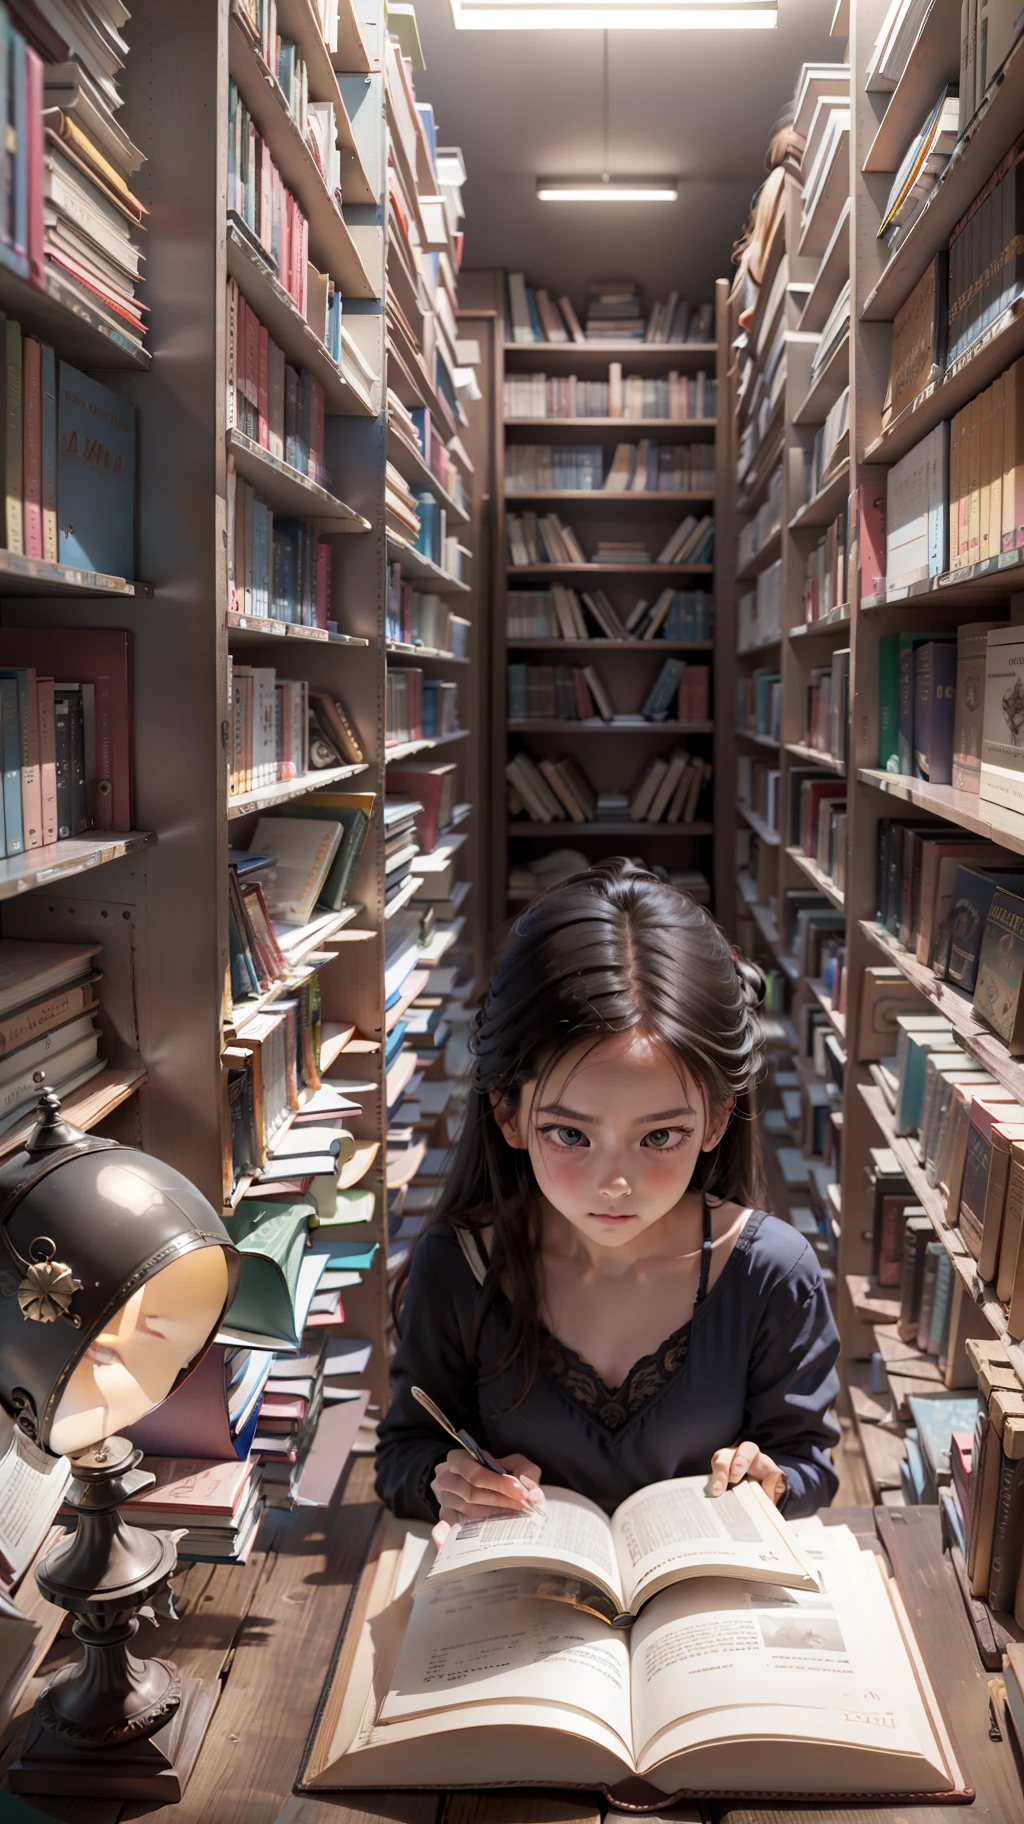 一个女孩, 读一本书, 背景是一个书架, 超现实主义风格